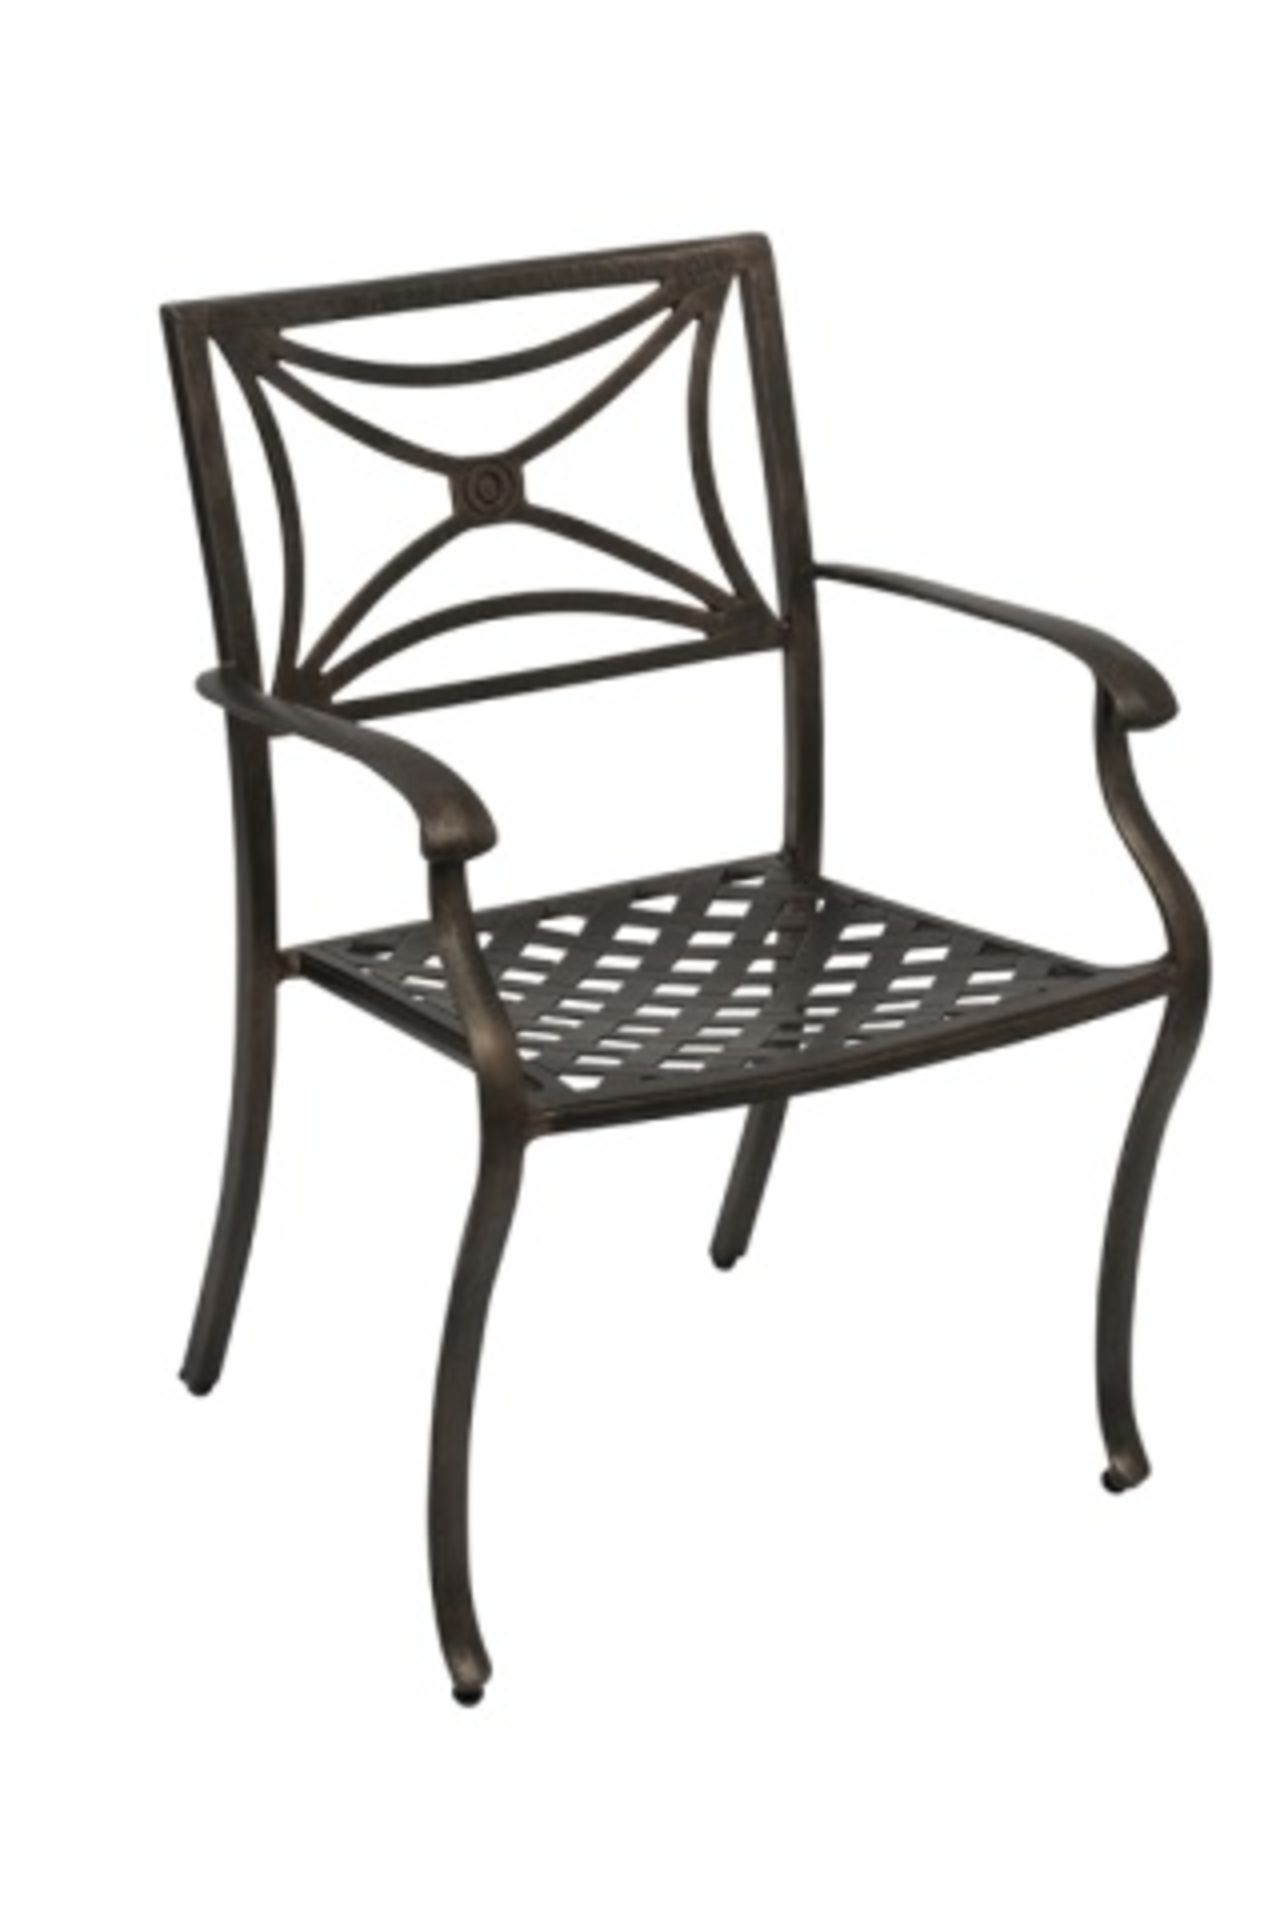 Cast Aluminum Weave Arm Chair - Director HS03. Cast aluminum Frame, Welded, Antique Bronze powder